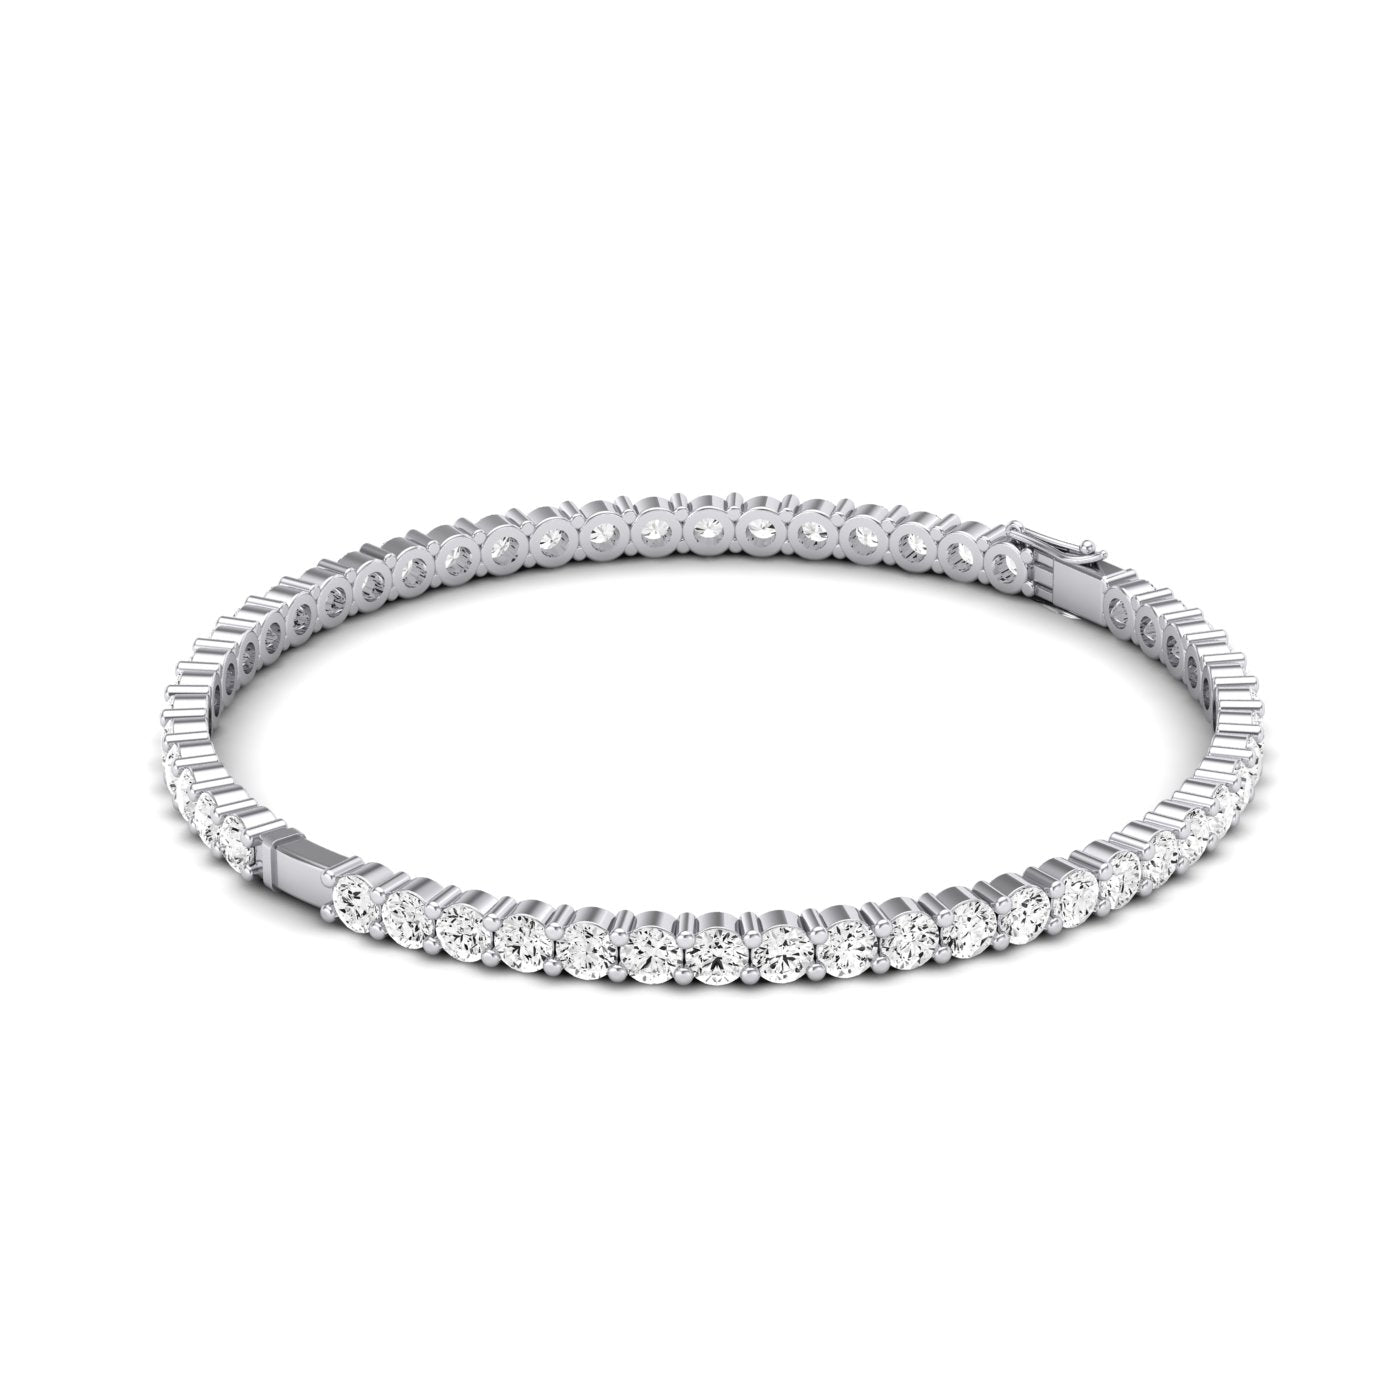 Athena Round Classic Bangle Diamond Bracelet (clarity Enhanced) whitegold